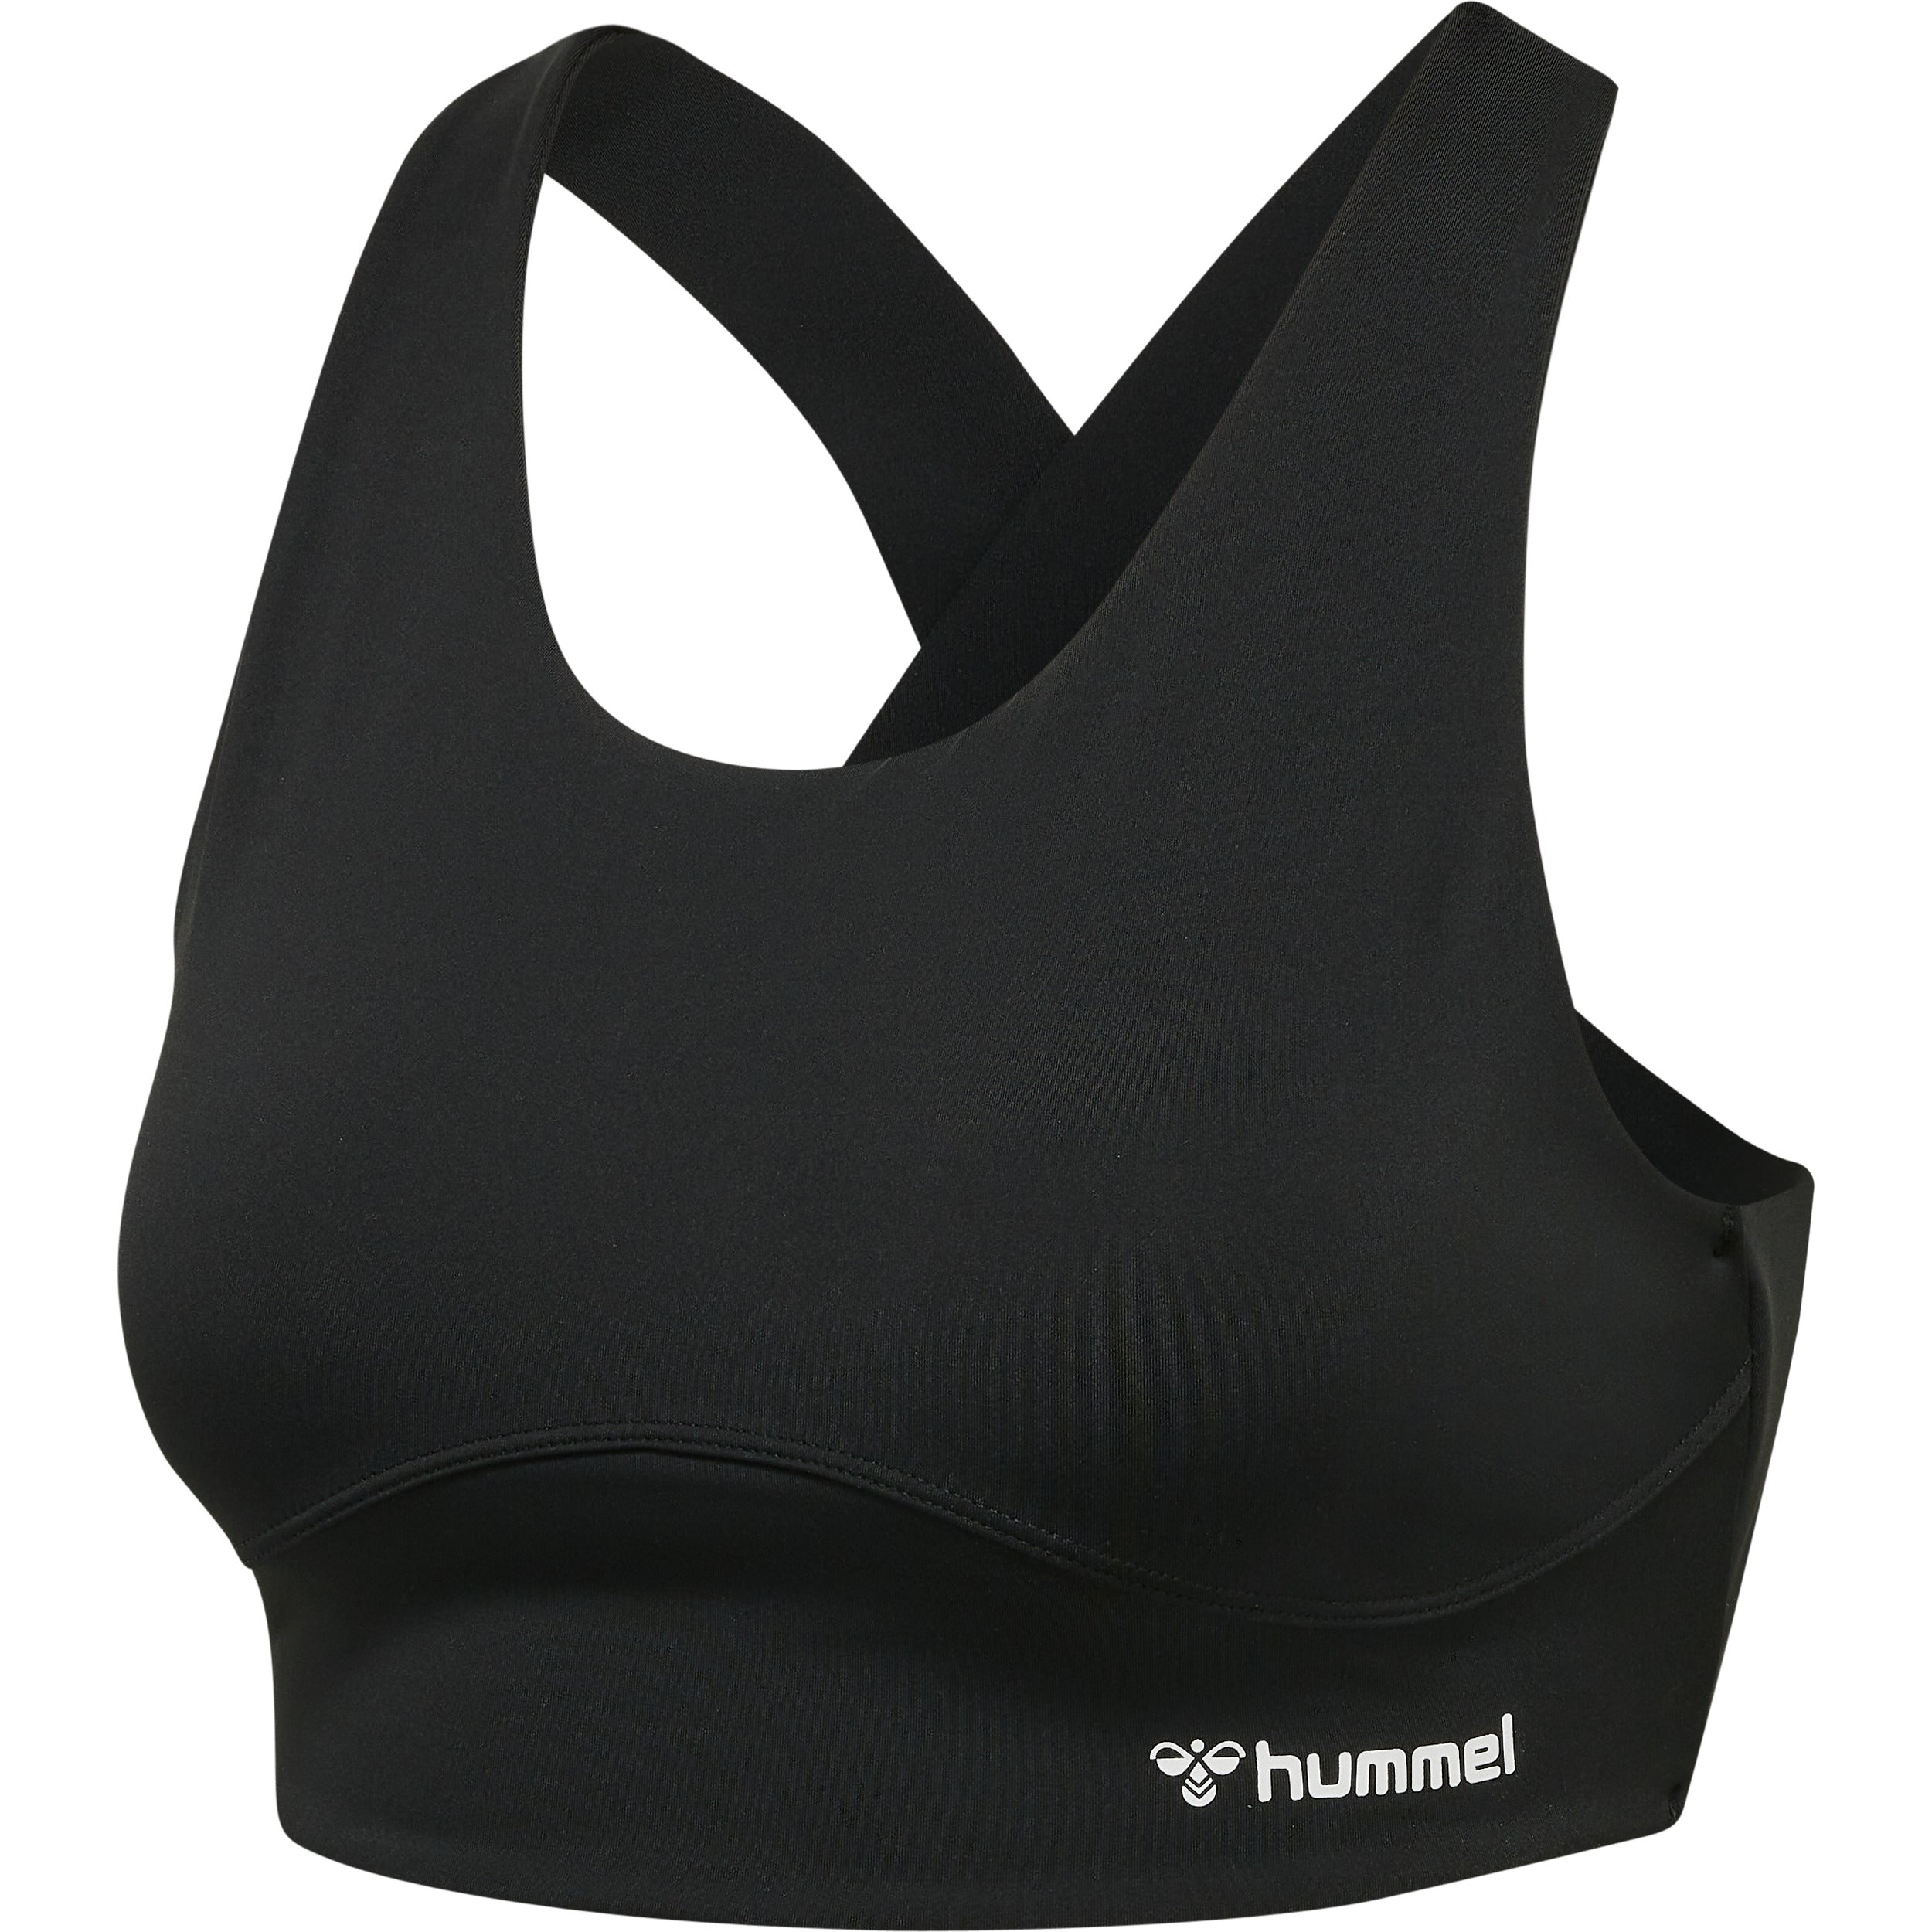 Brug Hummel Grace Sports Bra - Black til en forbedret oplevelse